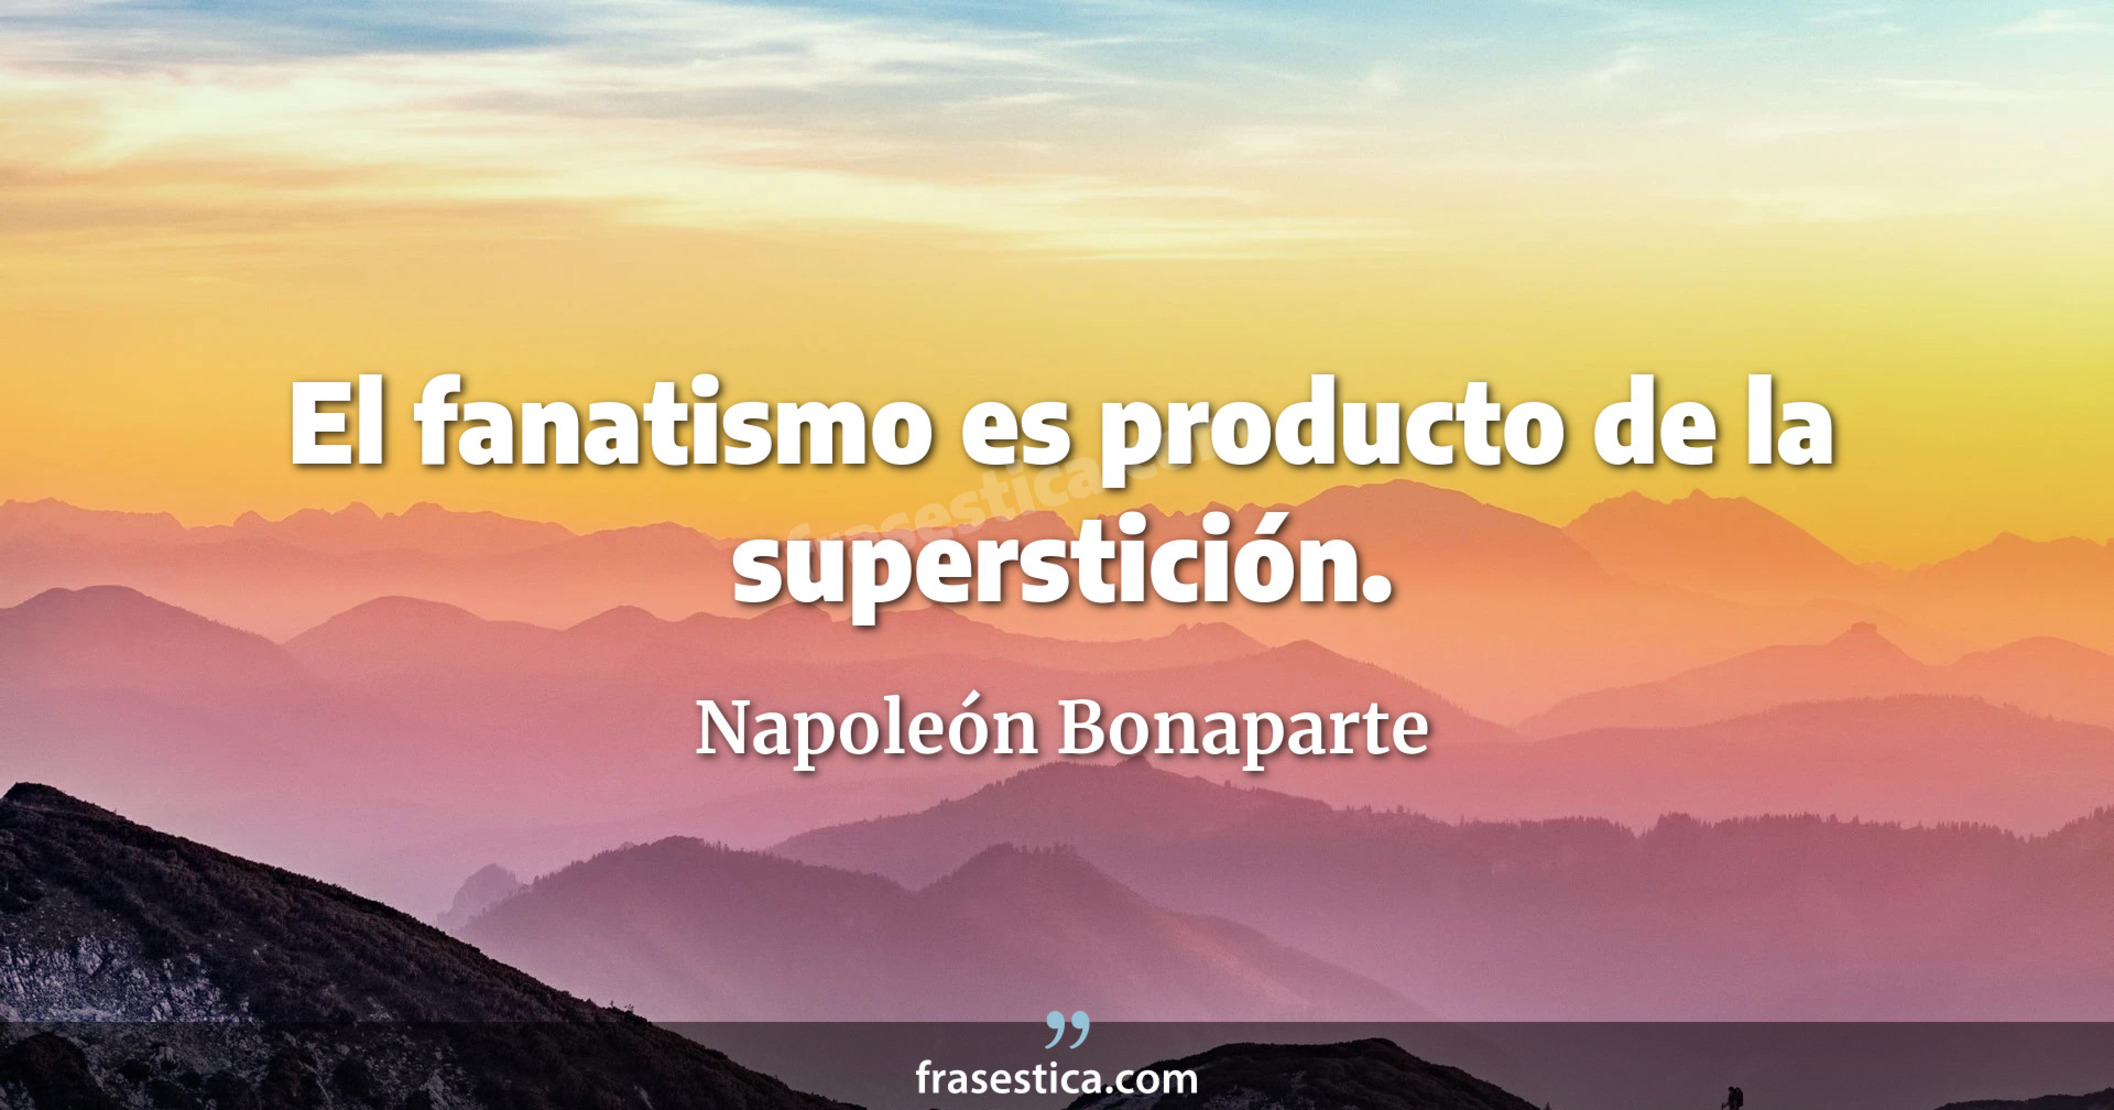 El fanatismo es producto de la superstición. - Napoleón Bonaparte